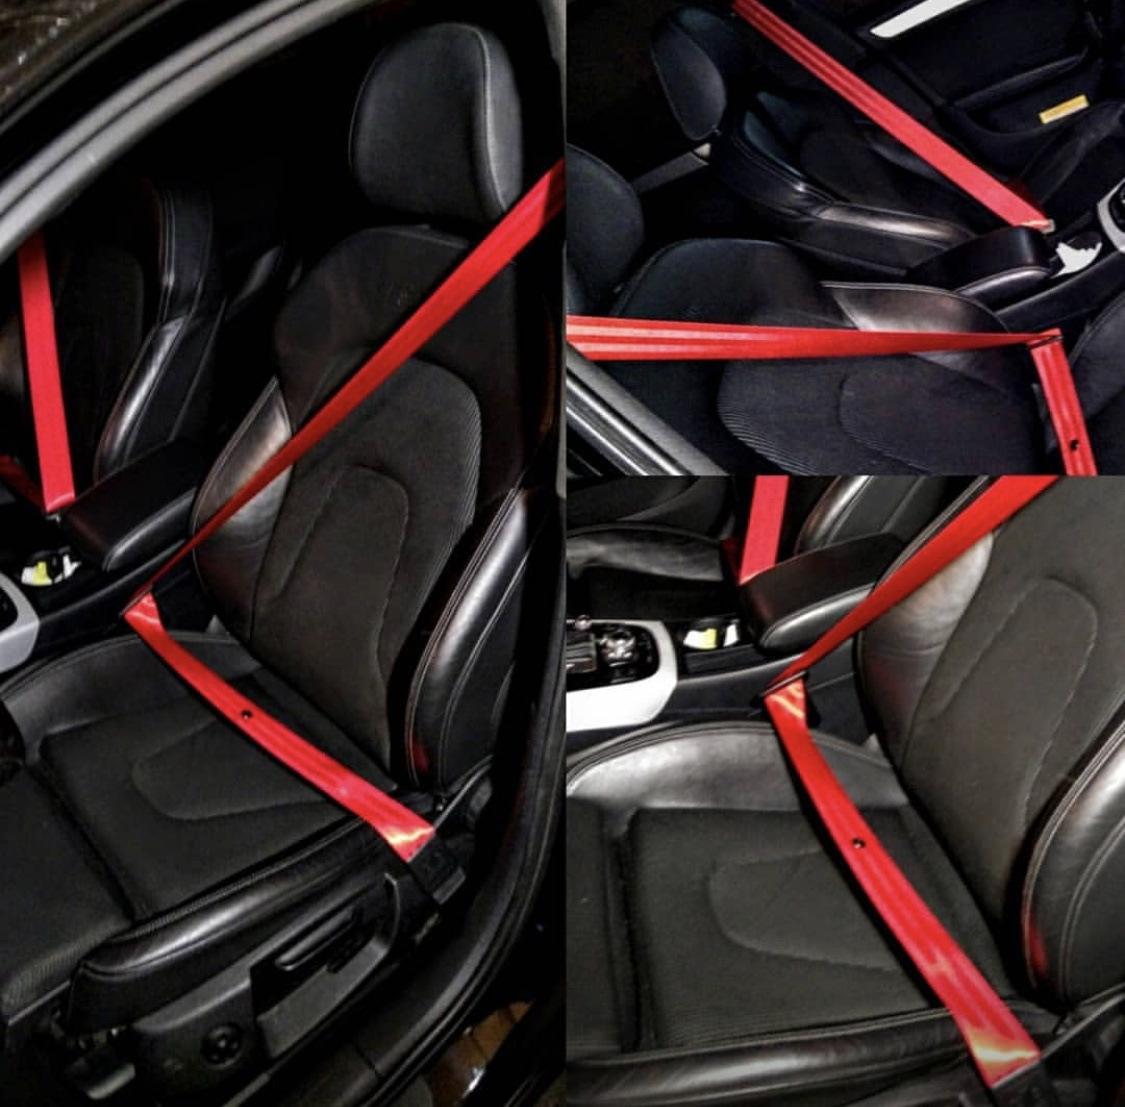 Красные ремни безопасности. Ауди s4 красные ремни безопасности. Красные ремни w204. Ремни безопасности Audi RS q3. Ремни безопасности на Ауди q3.